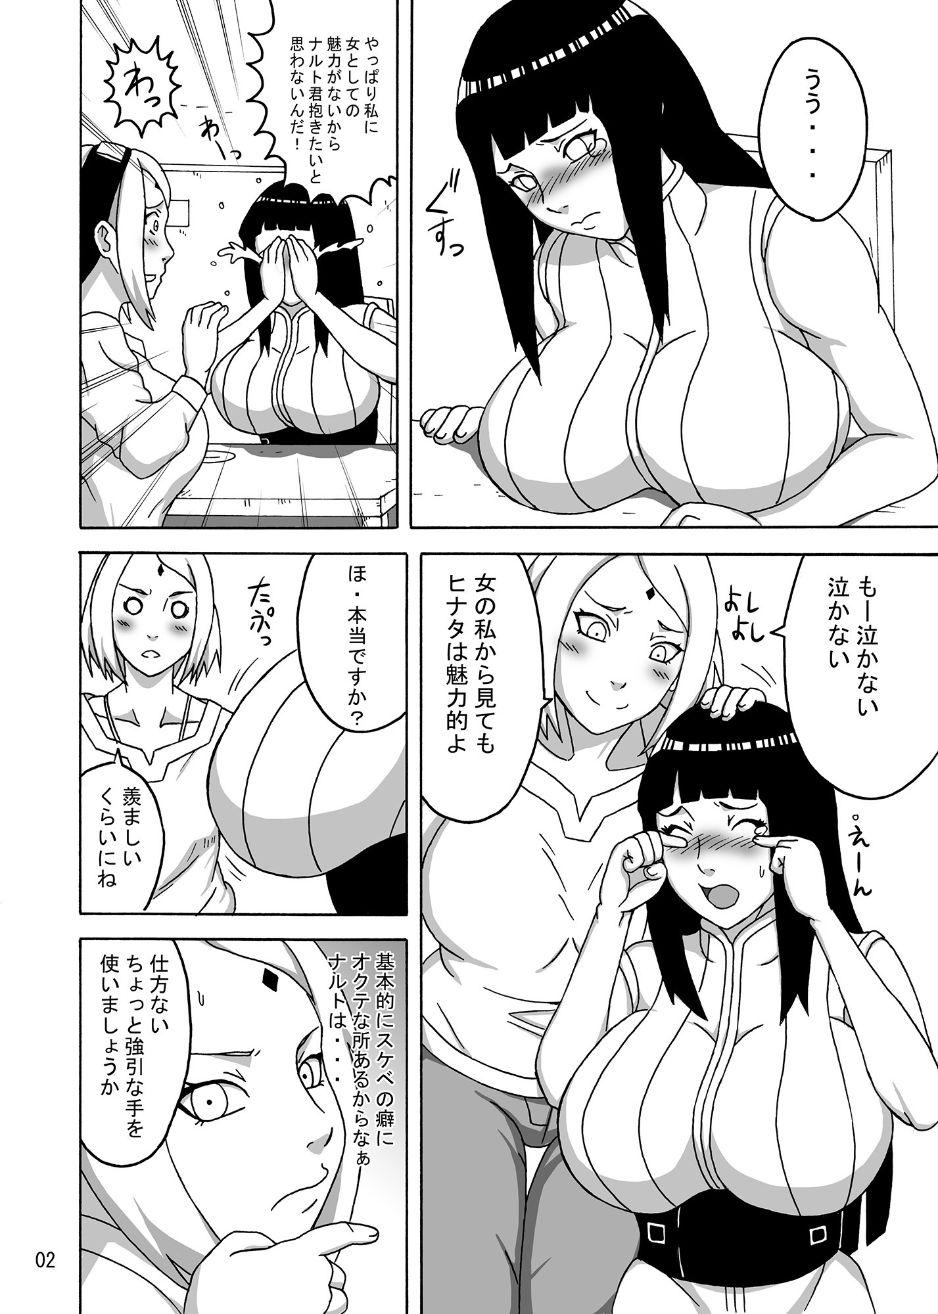 Grandpa naruhina - Naruto Forwomen - Page 5